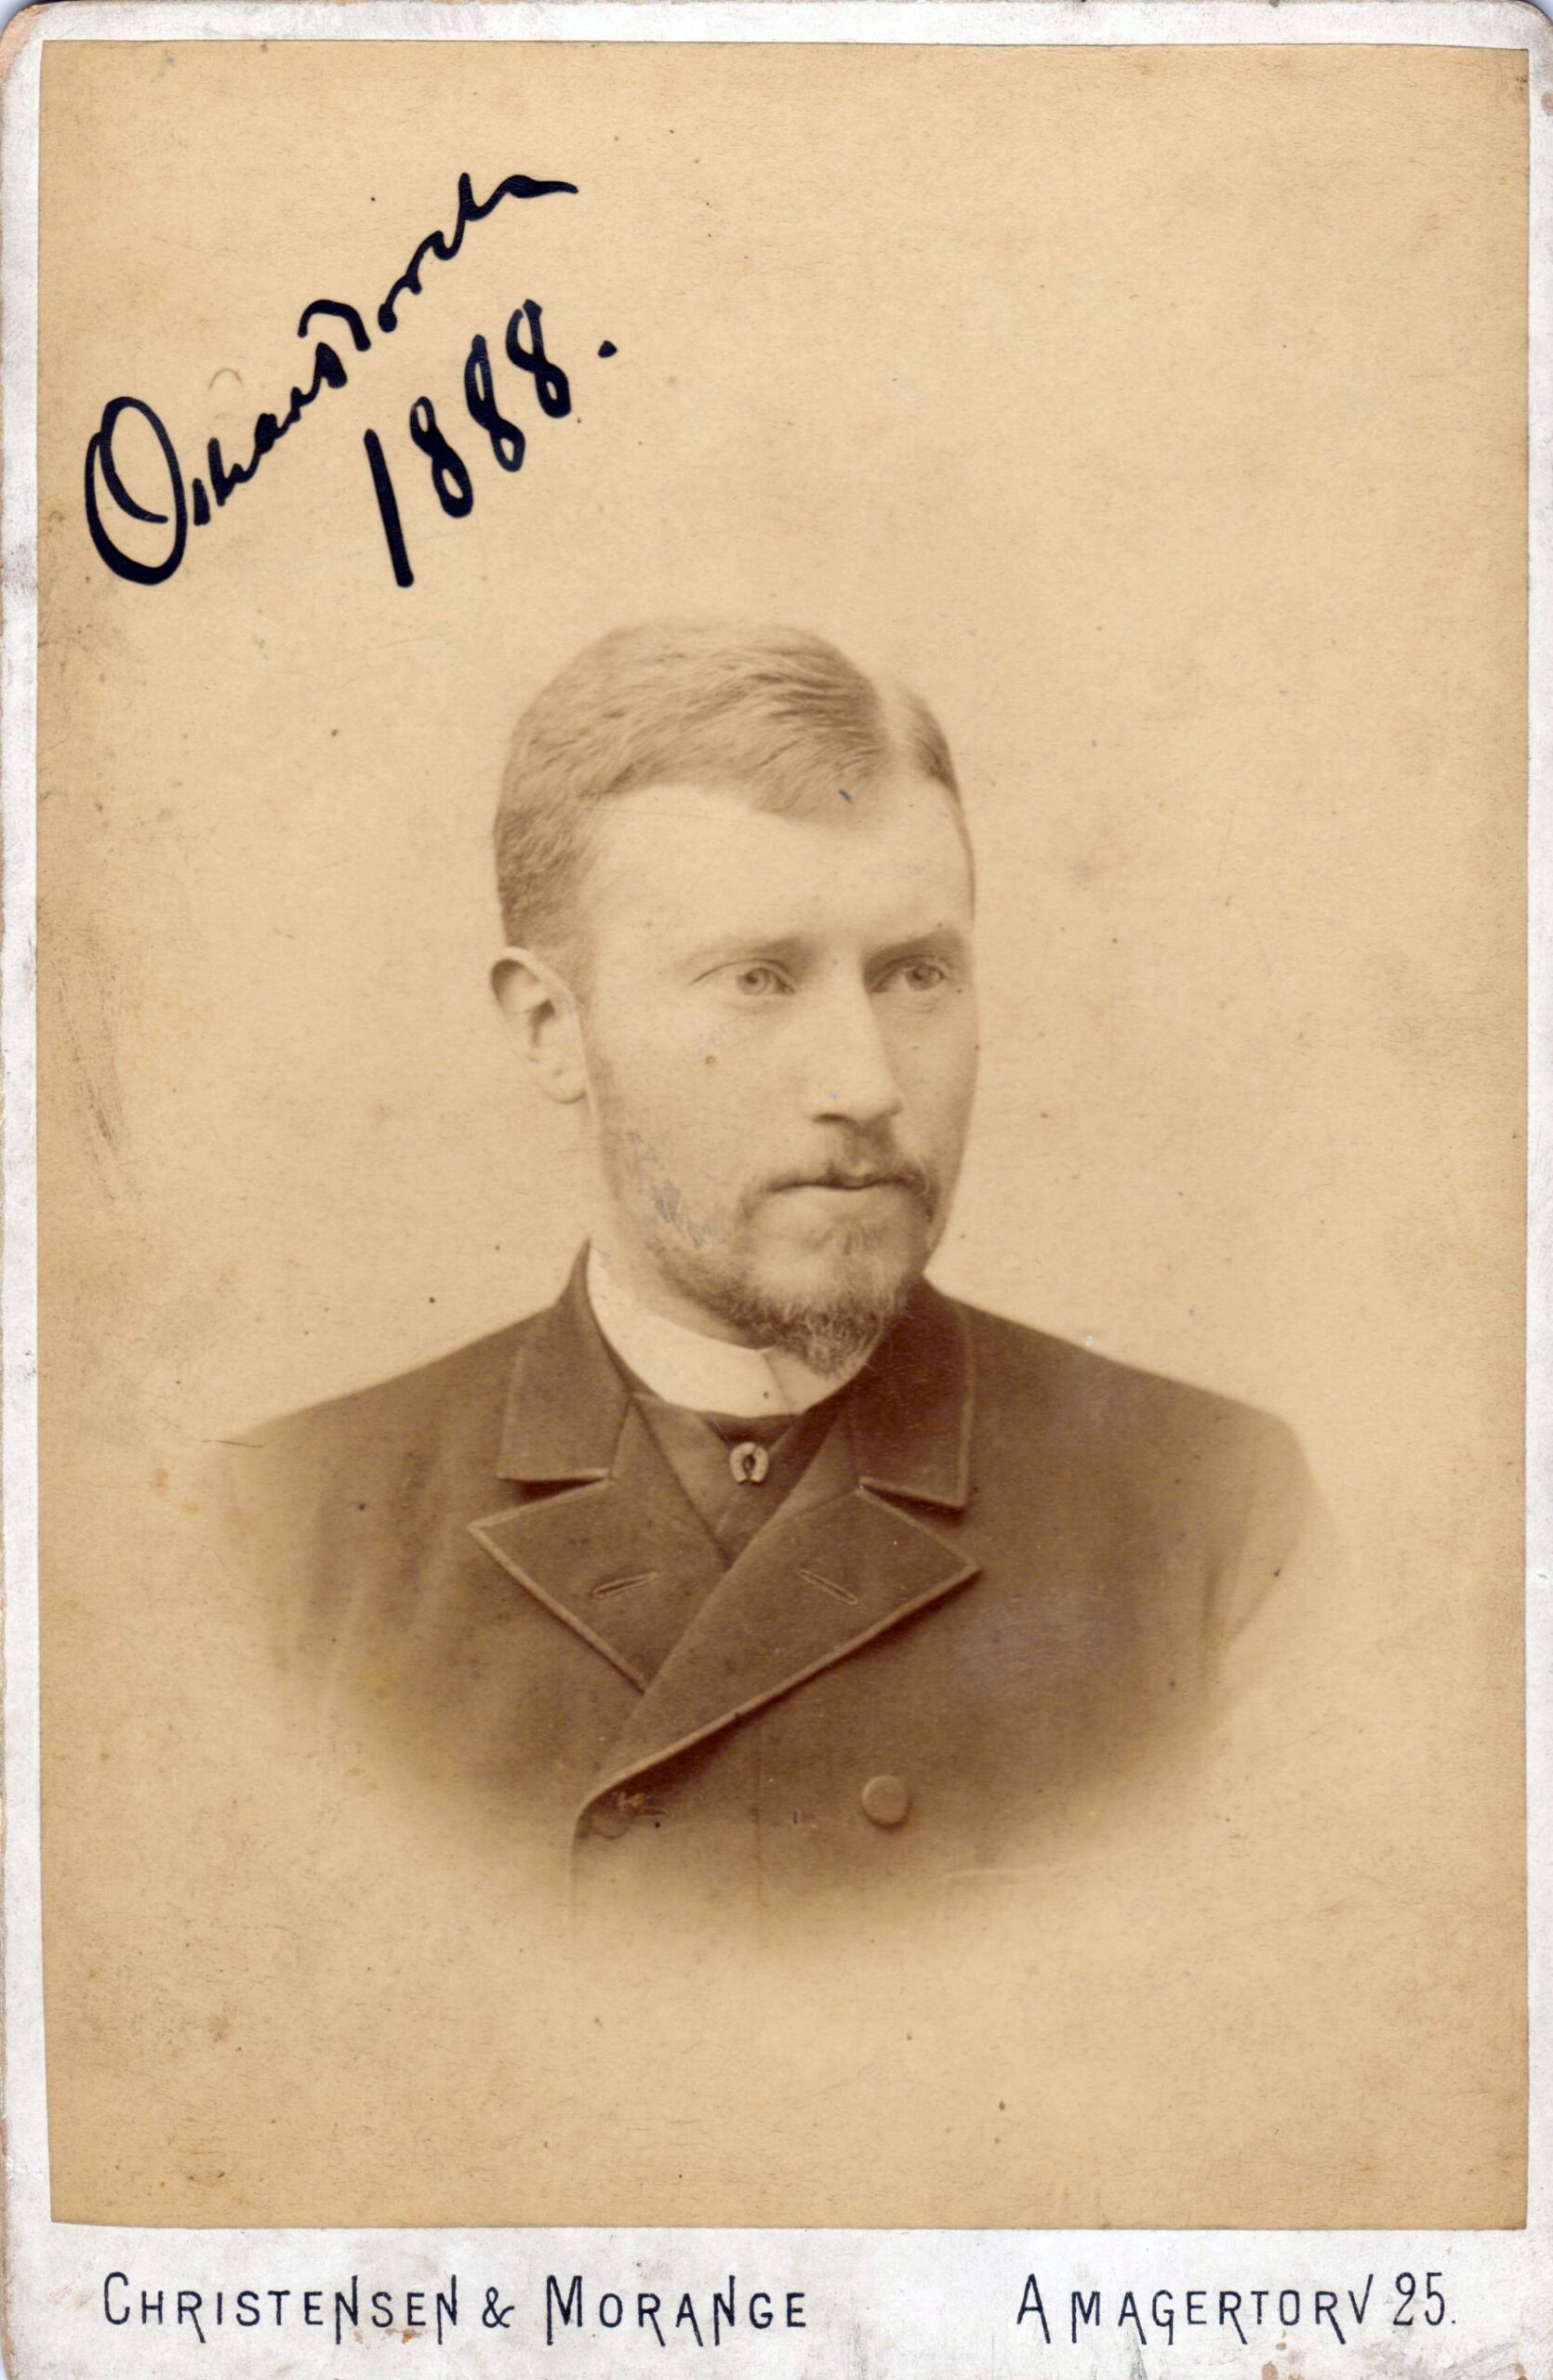 75.79 Oscar Borch f. 13.2.1866, søn af G.F Borch. Fotograf Christensen og Morange, Amagertorv 25, København. Dateret 1888